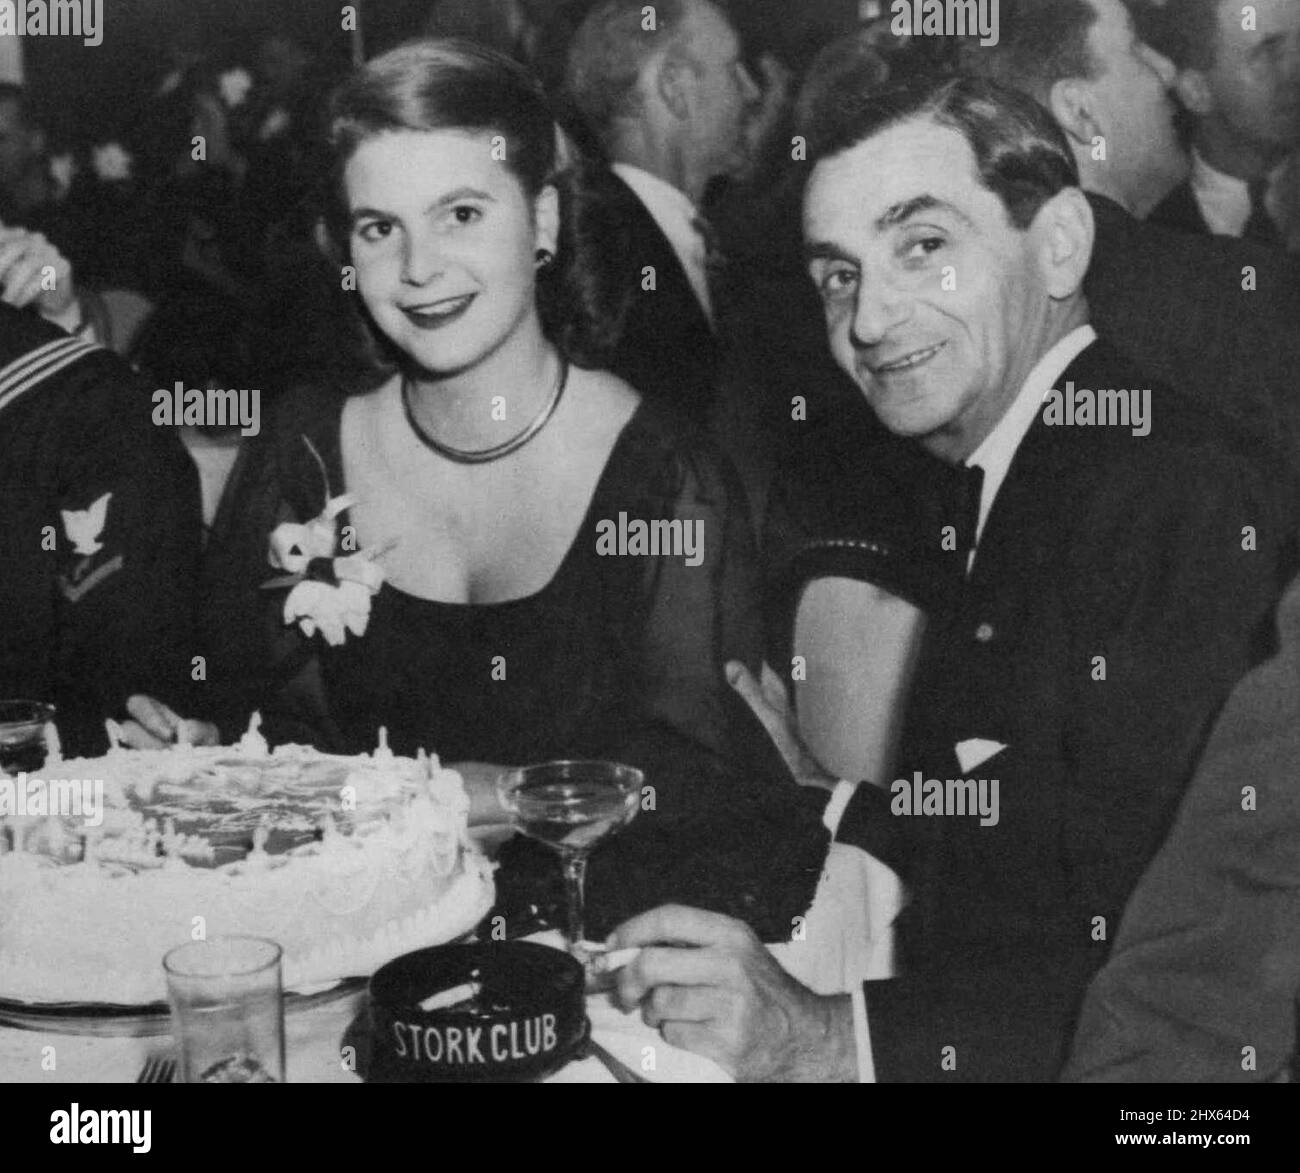 Berlin et sa fille célèbrent. Irving Berlin, célèbre auteur de chanson, et sa fille, Mary Ellis, partagent le gâteau d'anniversaire au Stork Club de New York, le 27 novembre, alors qu'ils célèbrent l'anniversaire de Mary Elli 19th. 28 novembre 1945. (Photo par photo de presse associée) Banque D'Images